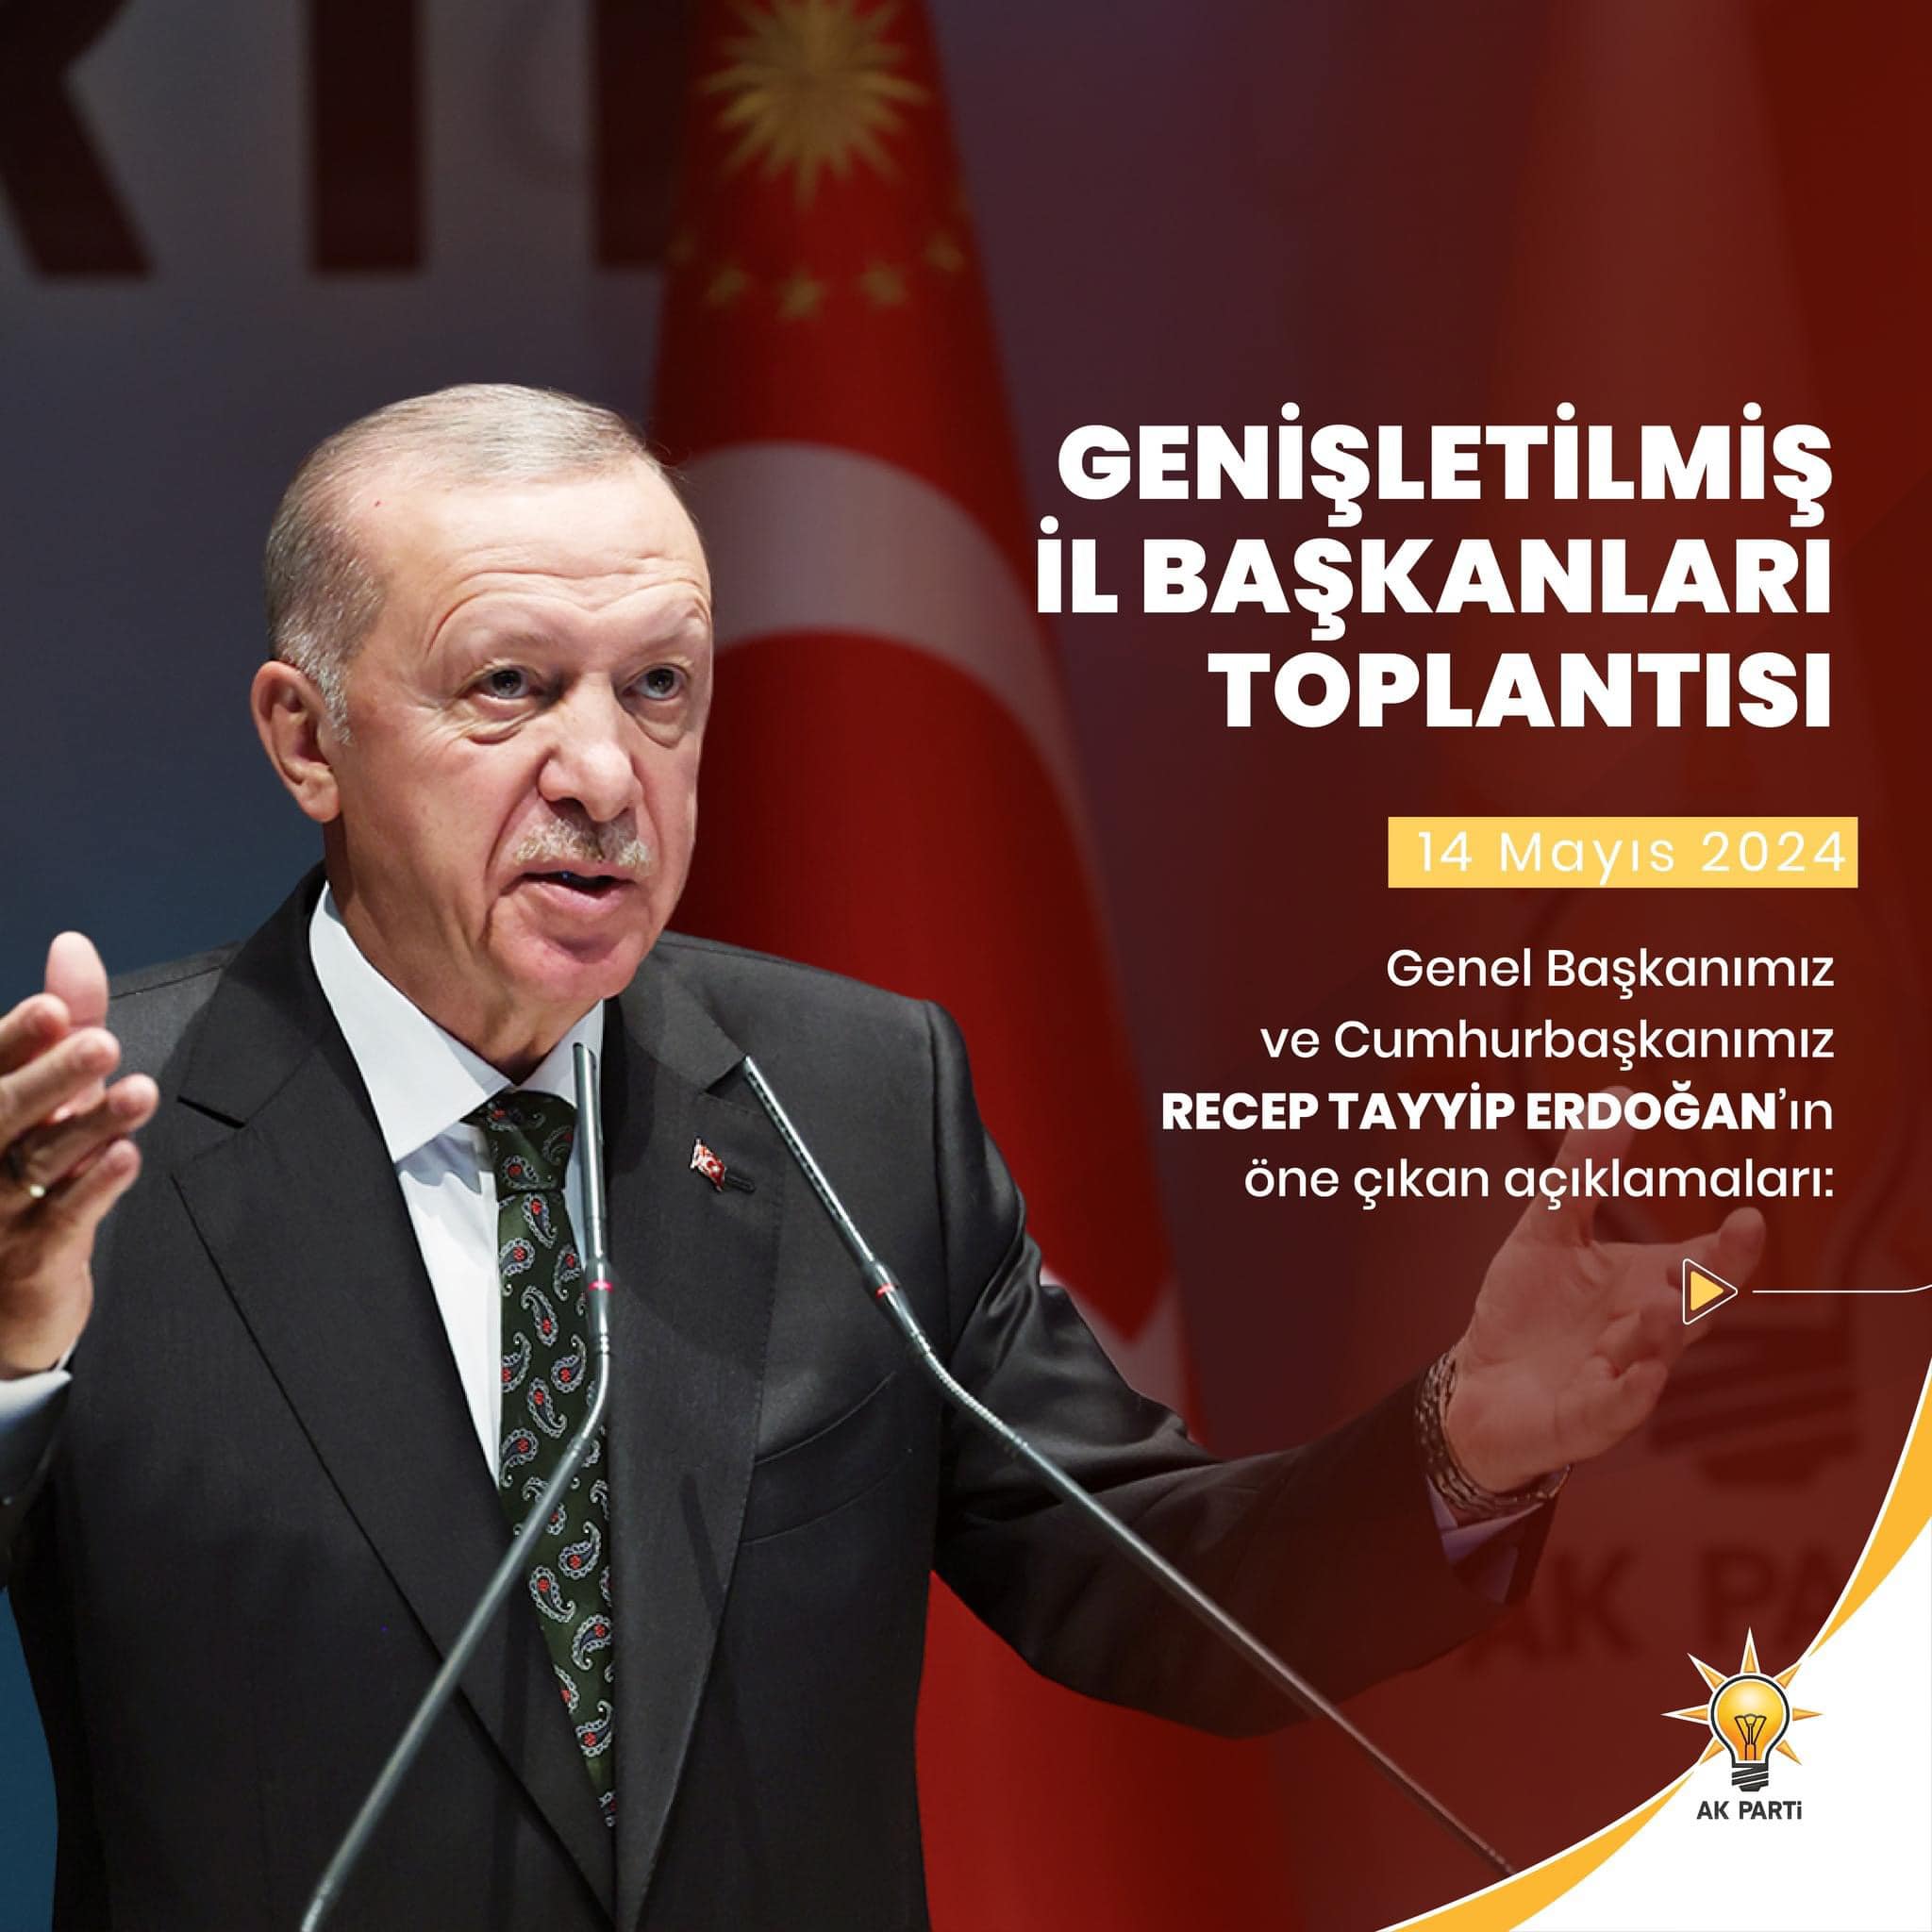 AK Parti Genişletilmiş İl Başkanları Toplantısında Cumhurbaşkanı Erdoğan'ın Açıklamaları